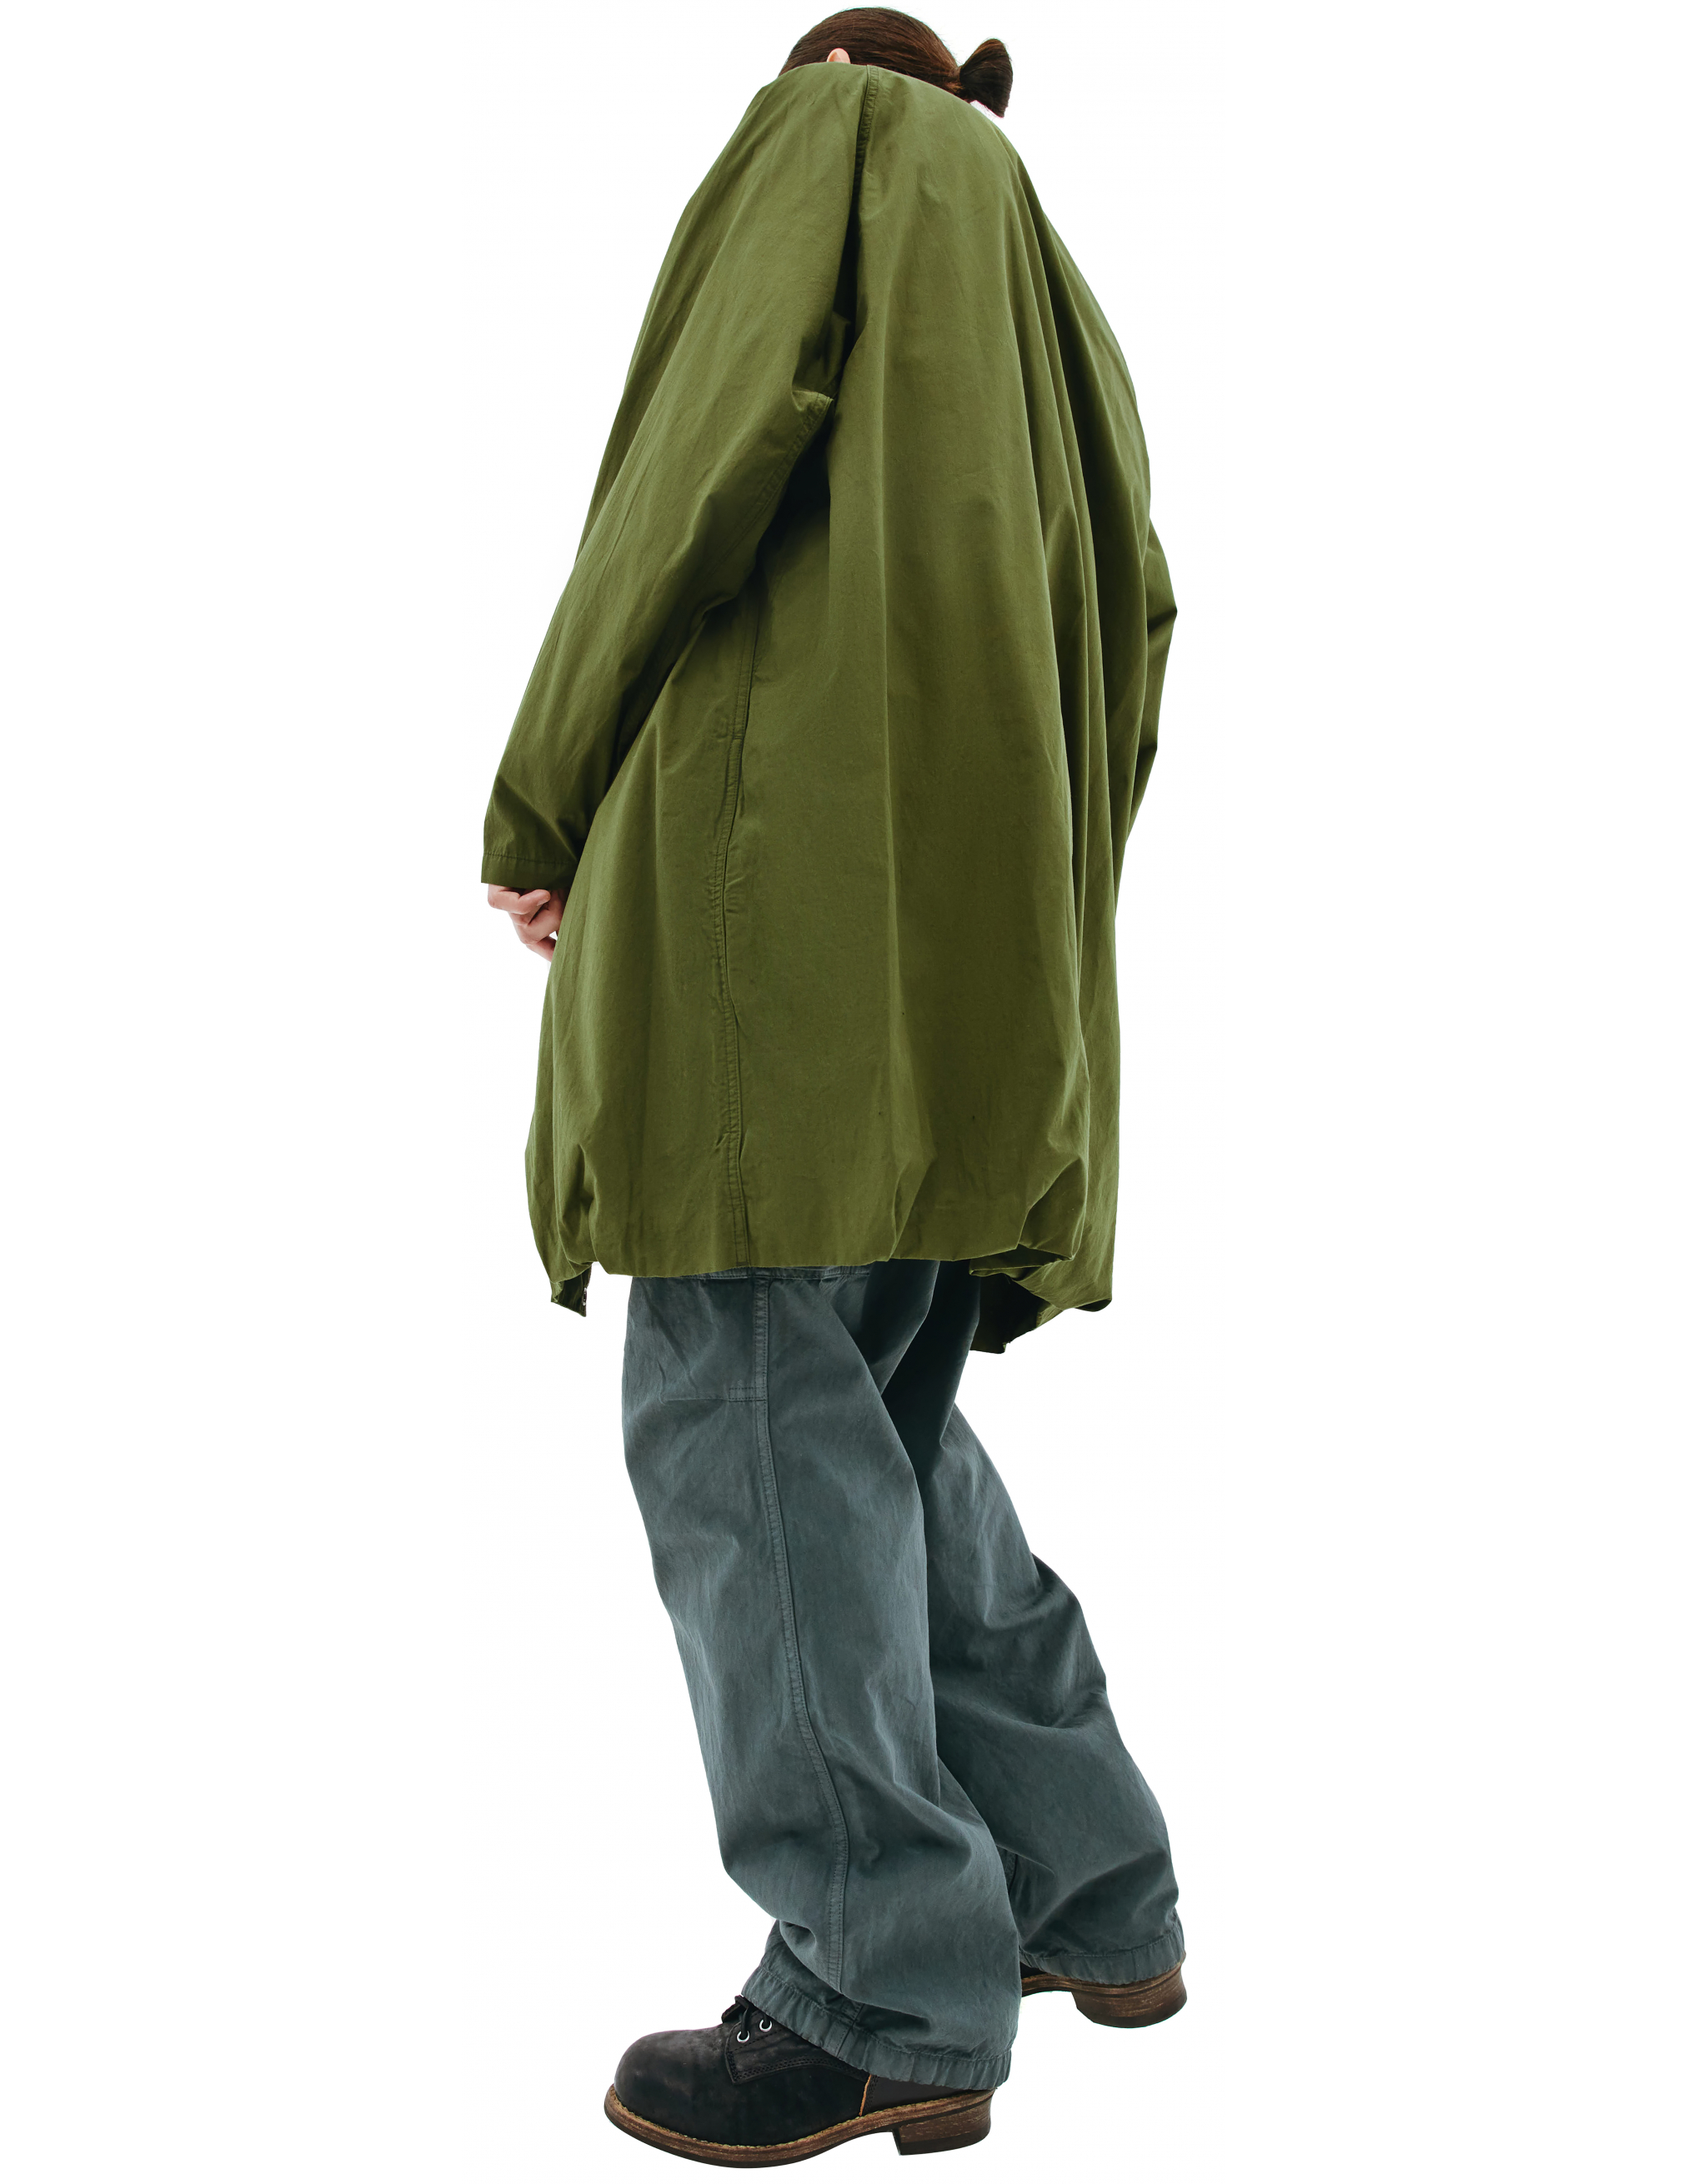 Пальто из хлопка с накладным карманом Visvim 0121205013027/olive, размер 5;4 0121205013027/olive - фото 2